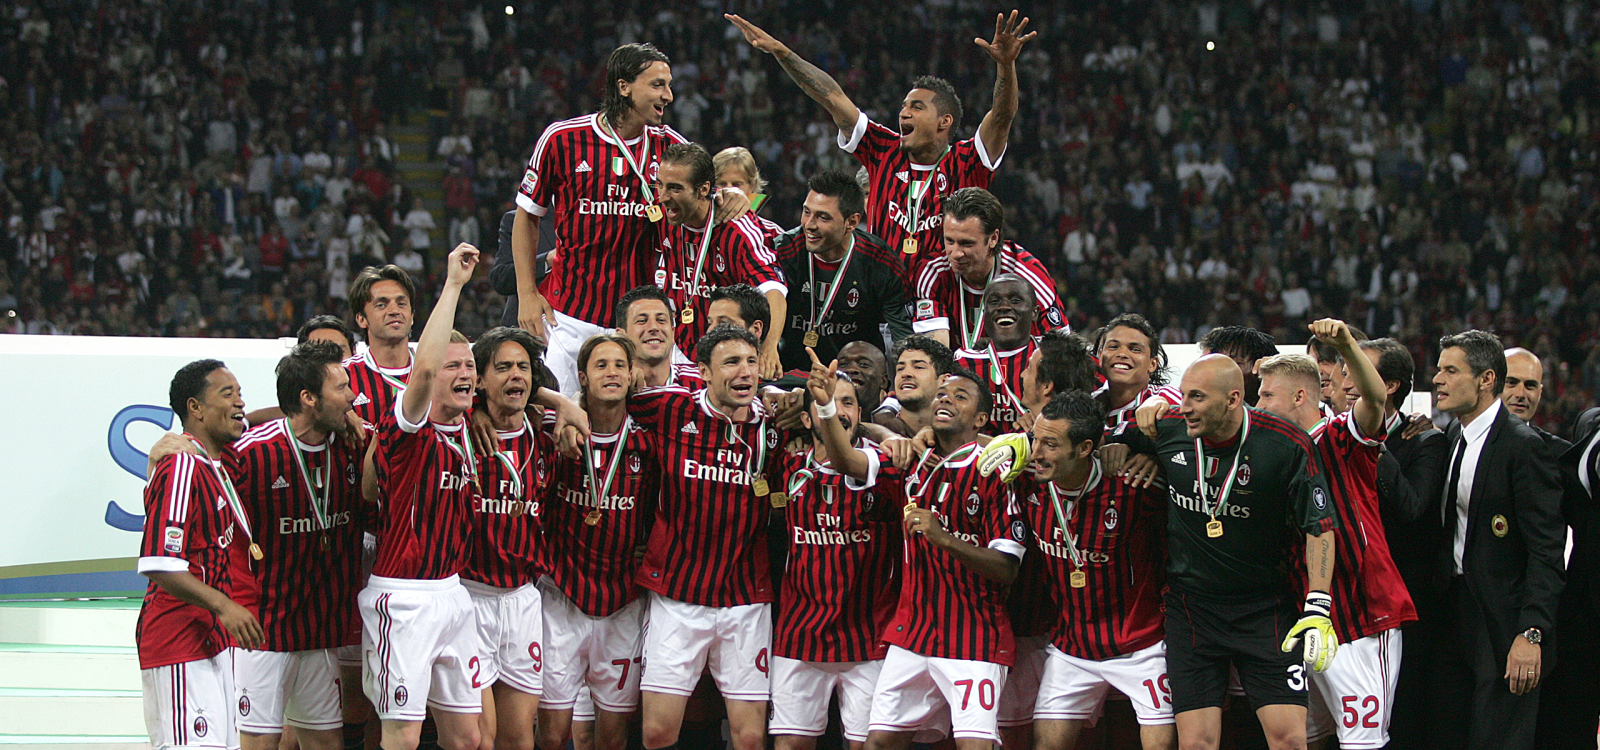 Lần gần nhất AC Milan vô địch đã vào mùa giải 2010/11